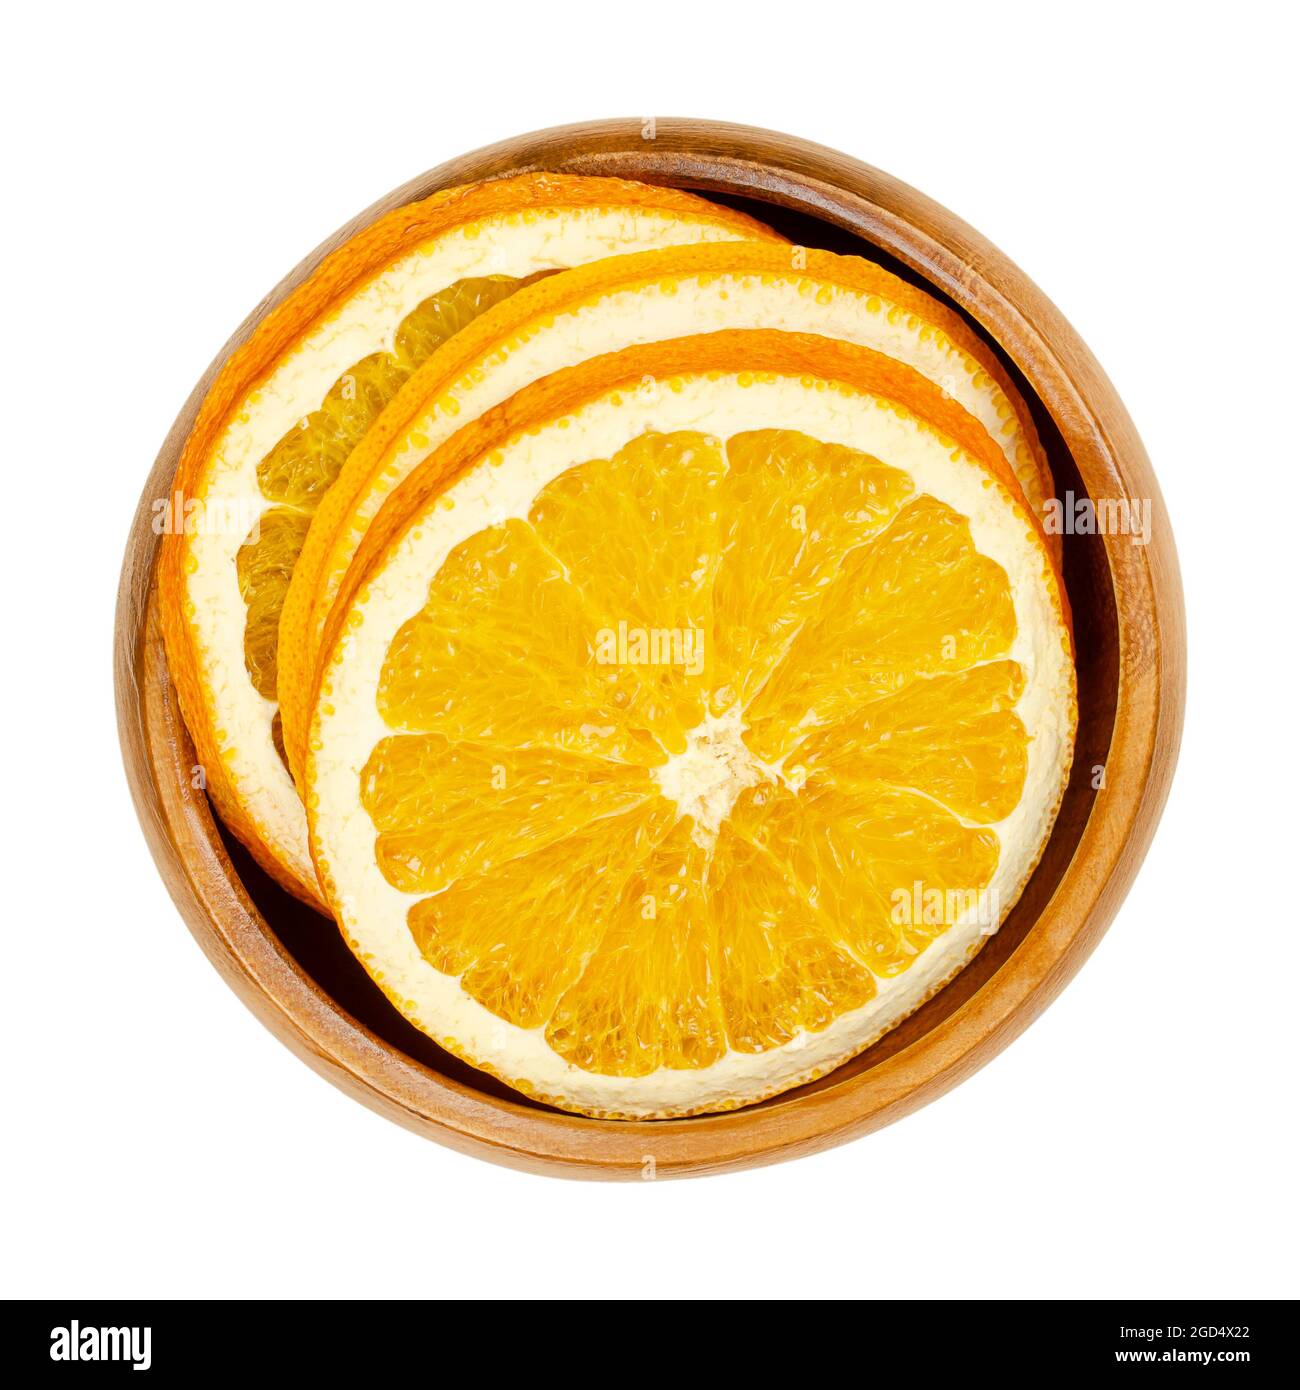 Tranches d'orange séchées, dans un bol en bois. Oranges, coupées en coupes transversales, fruits en tranches, utilisées comme décoration de Noël aromatique odorante. Banque D'Images